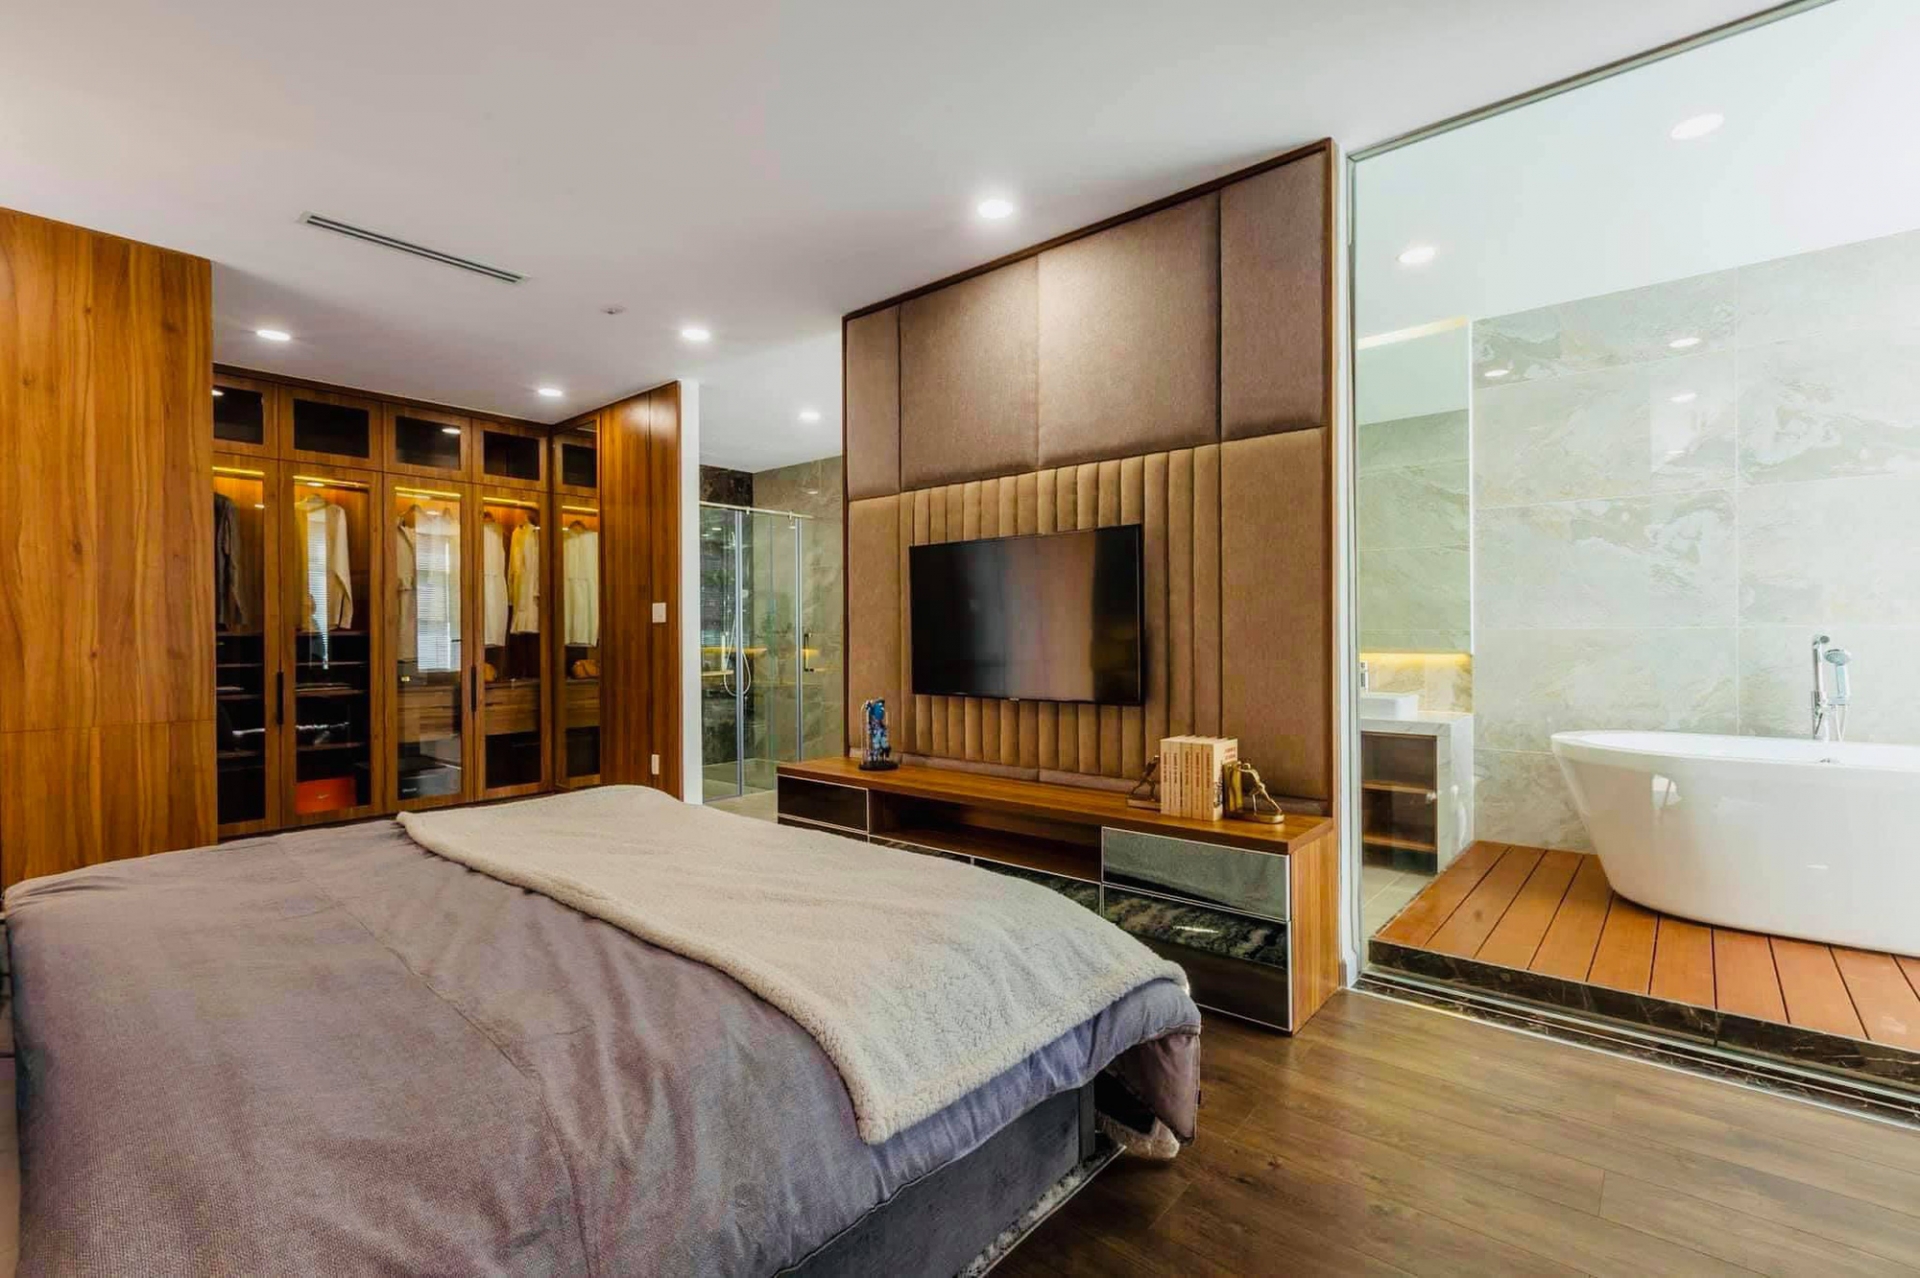 Căn penthouse của Hoa hậu Ngọc Diễm được thiết kế với 4 phòng ngủ, đồ nội thất sử dụng tông màu trầm phù hợp với không gian nghỉ ngơi.